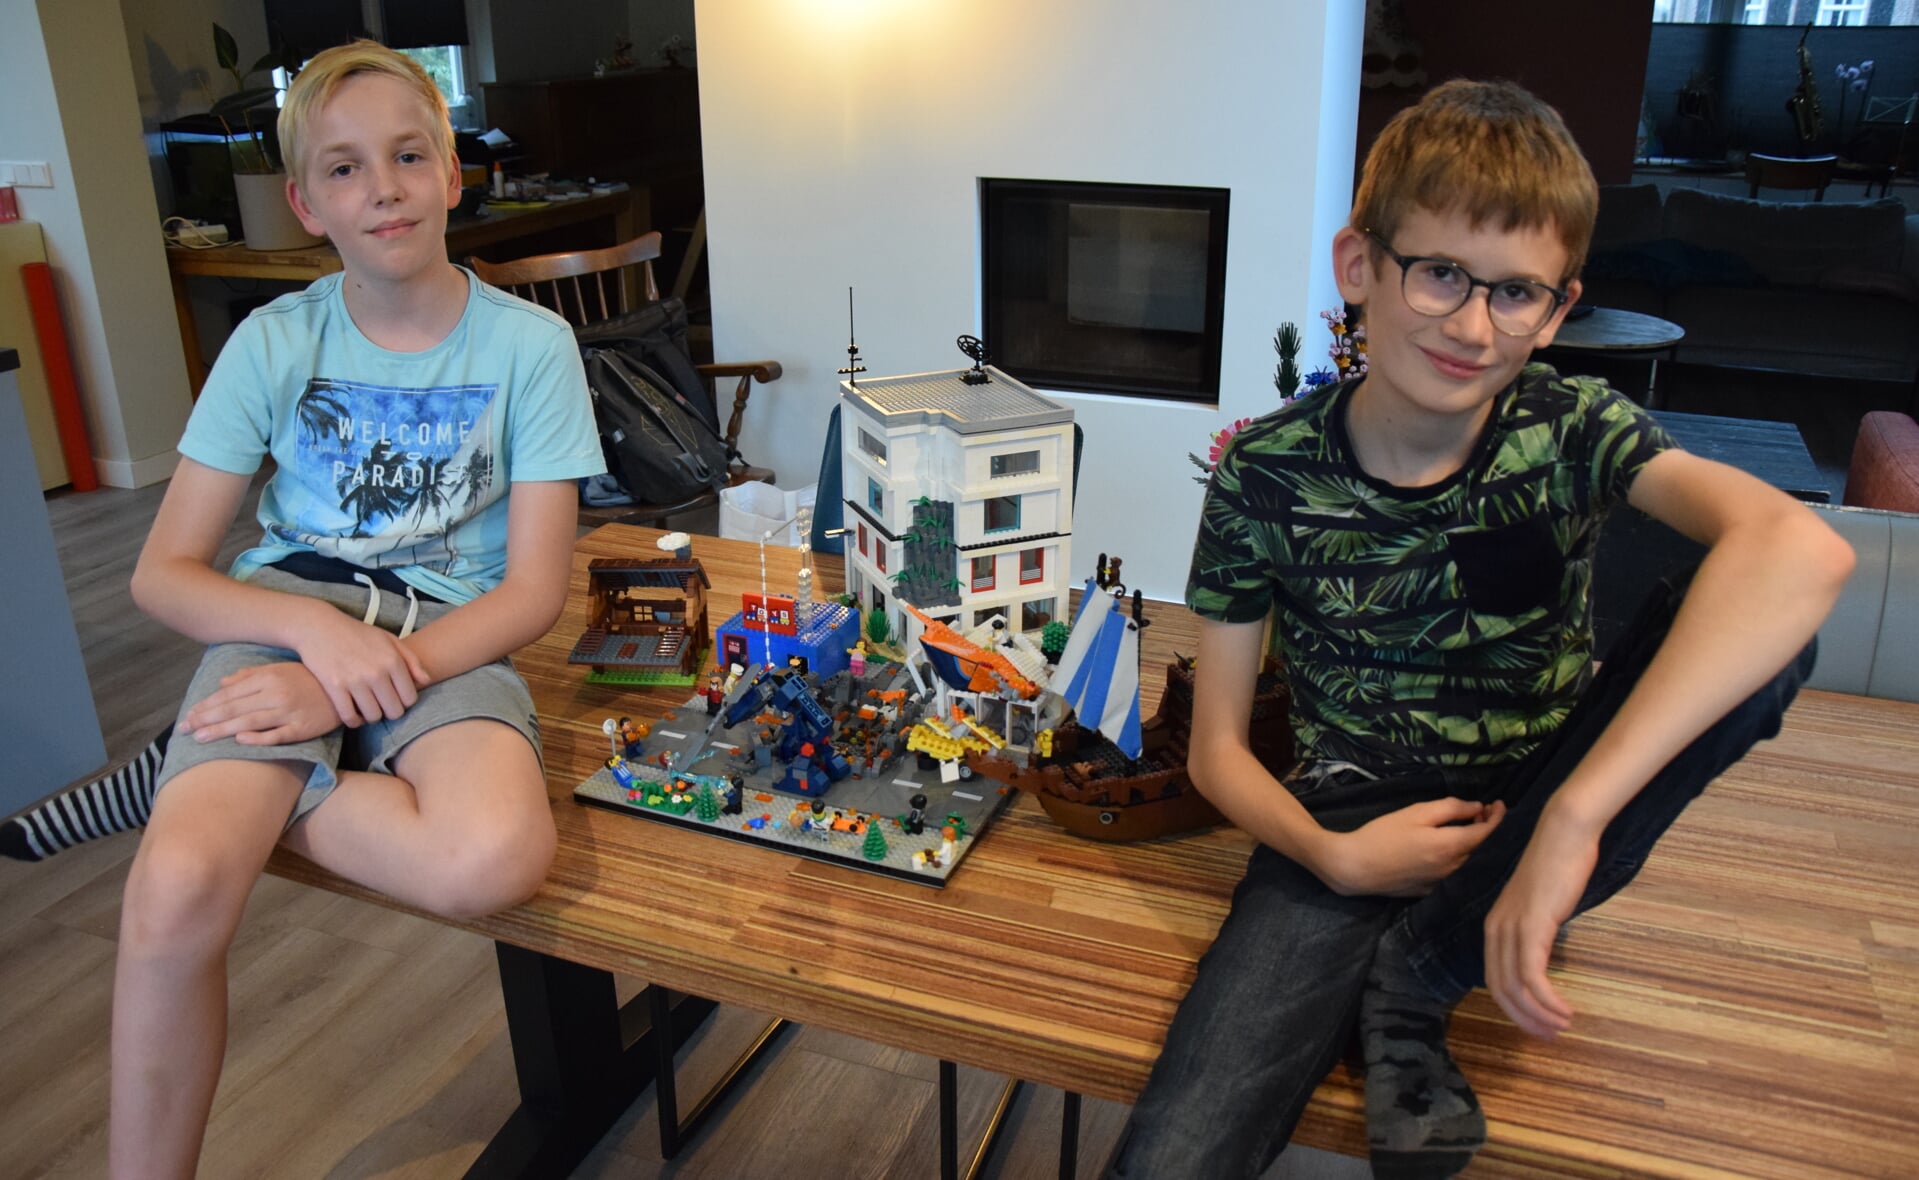 Siem Gerritsen (links) en Sijmen van Berkel doen samen mee aan het NK Lego Bouwen van speelgoedzaak Intertoys. Vrijdag is de uitzending van hun voorronde.